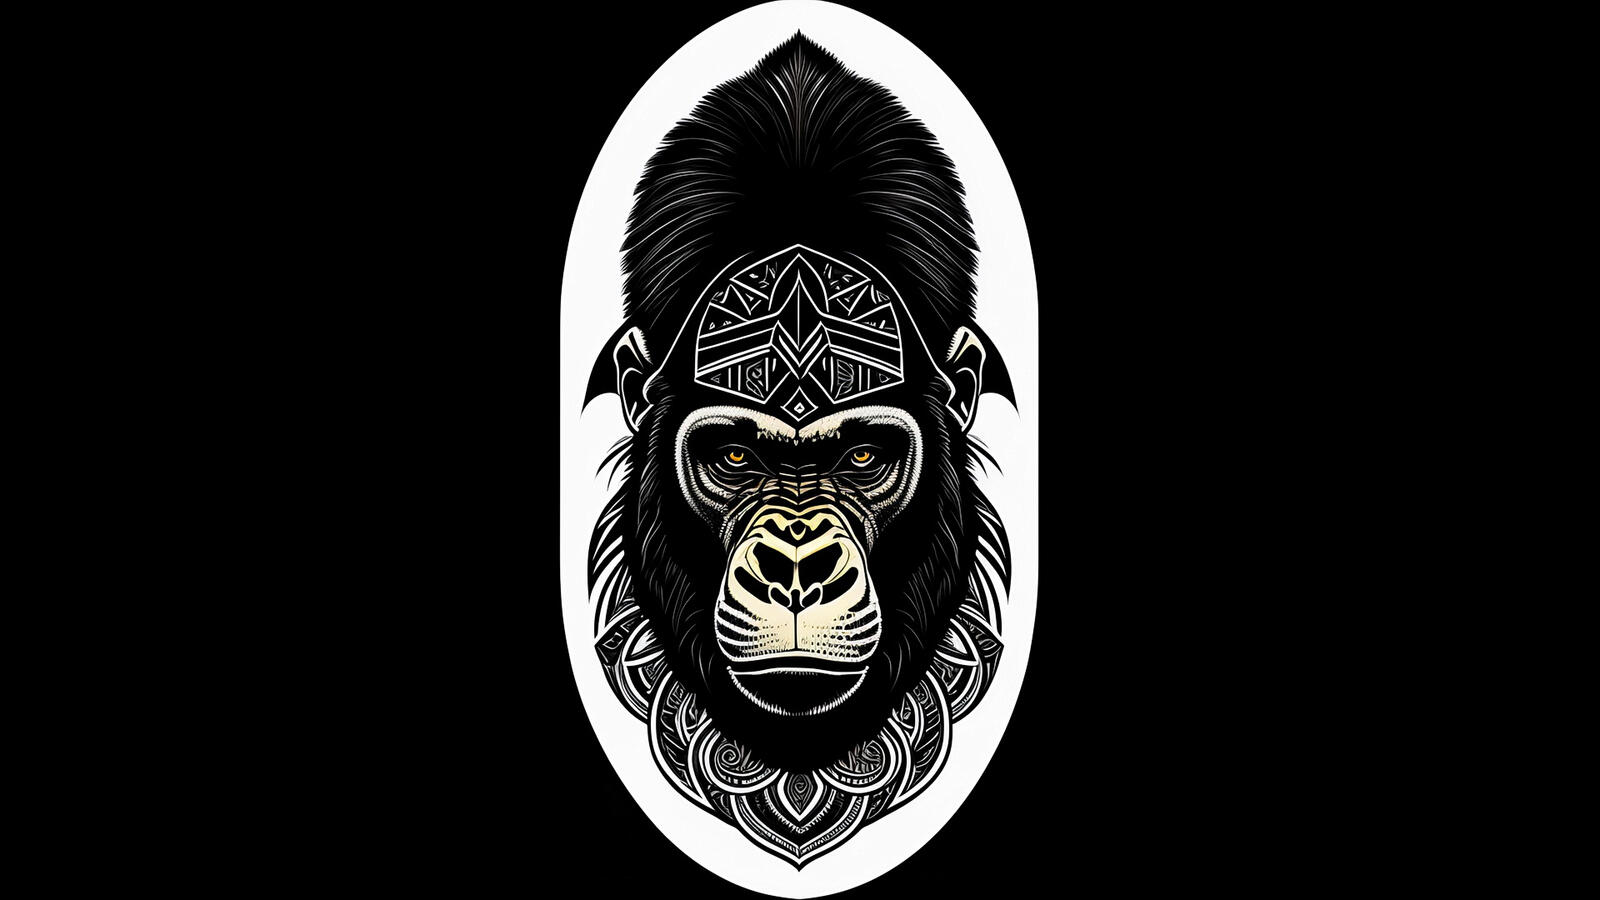 Бесплатное фото Голова гориллы на черном фоне